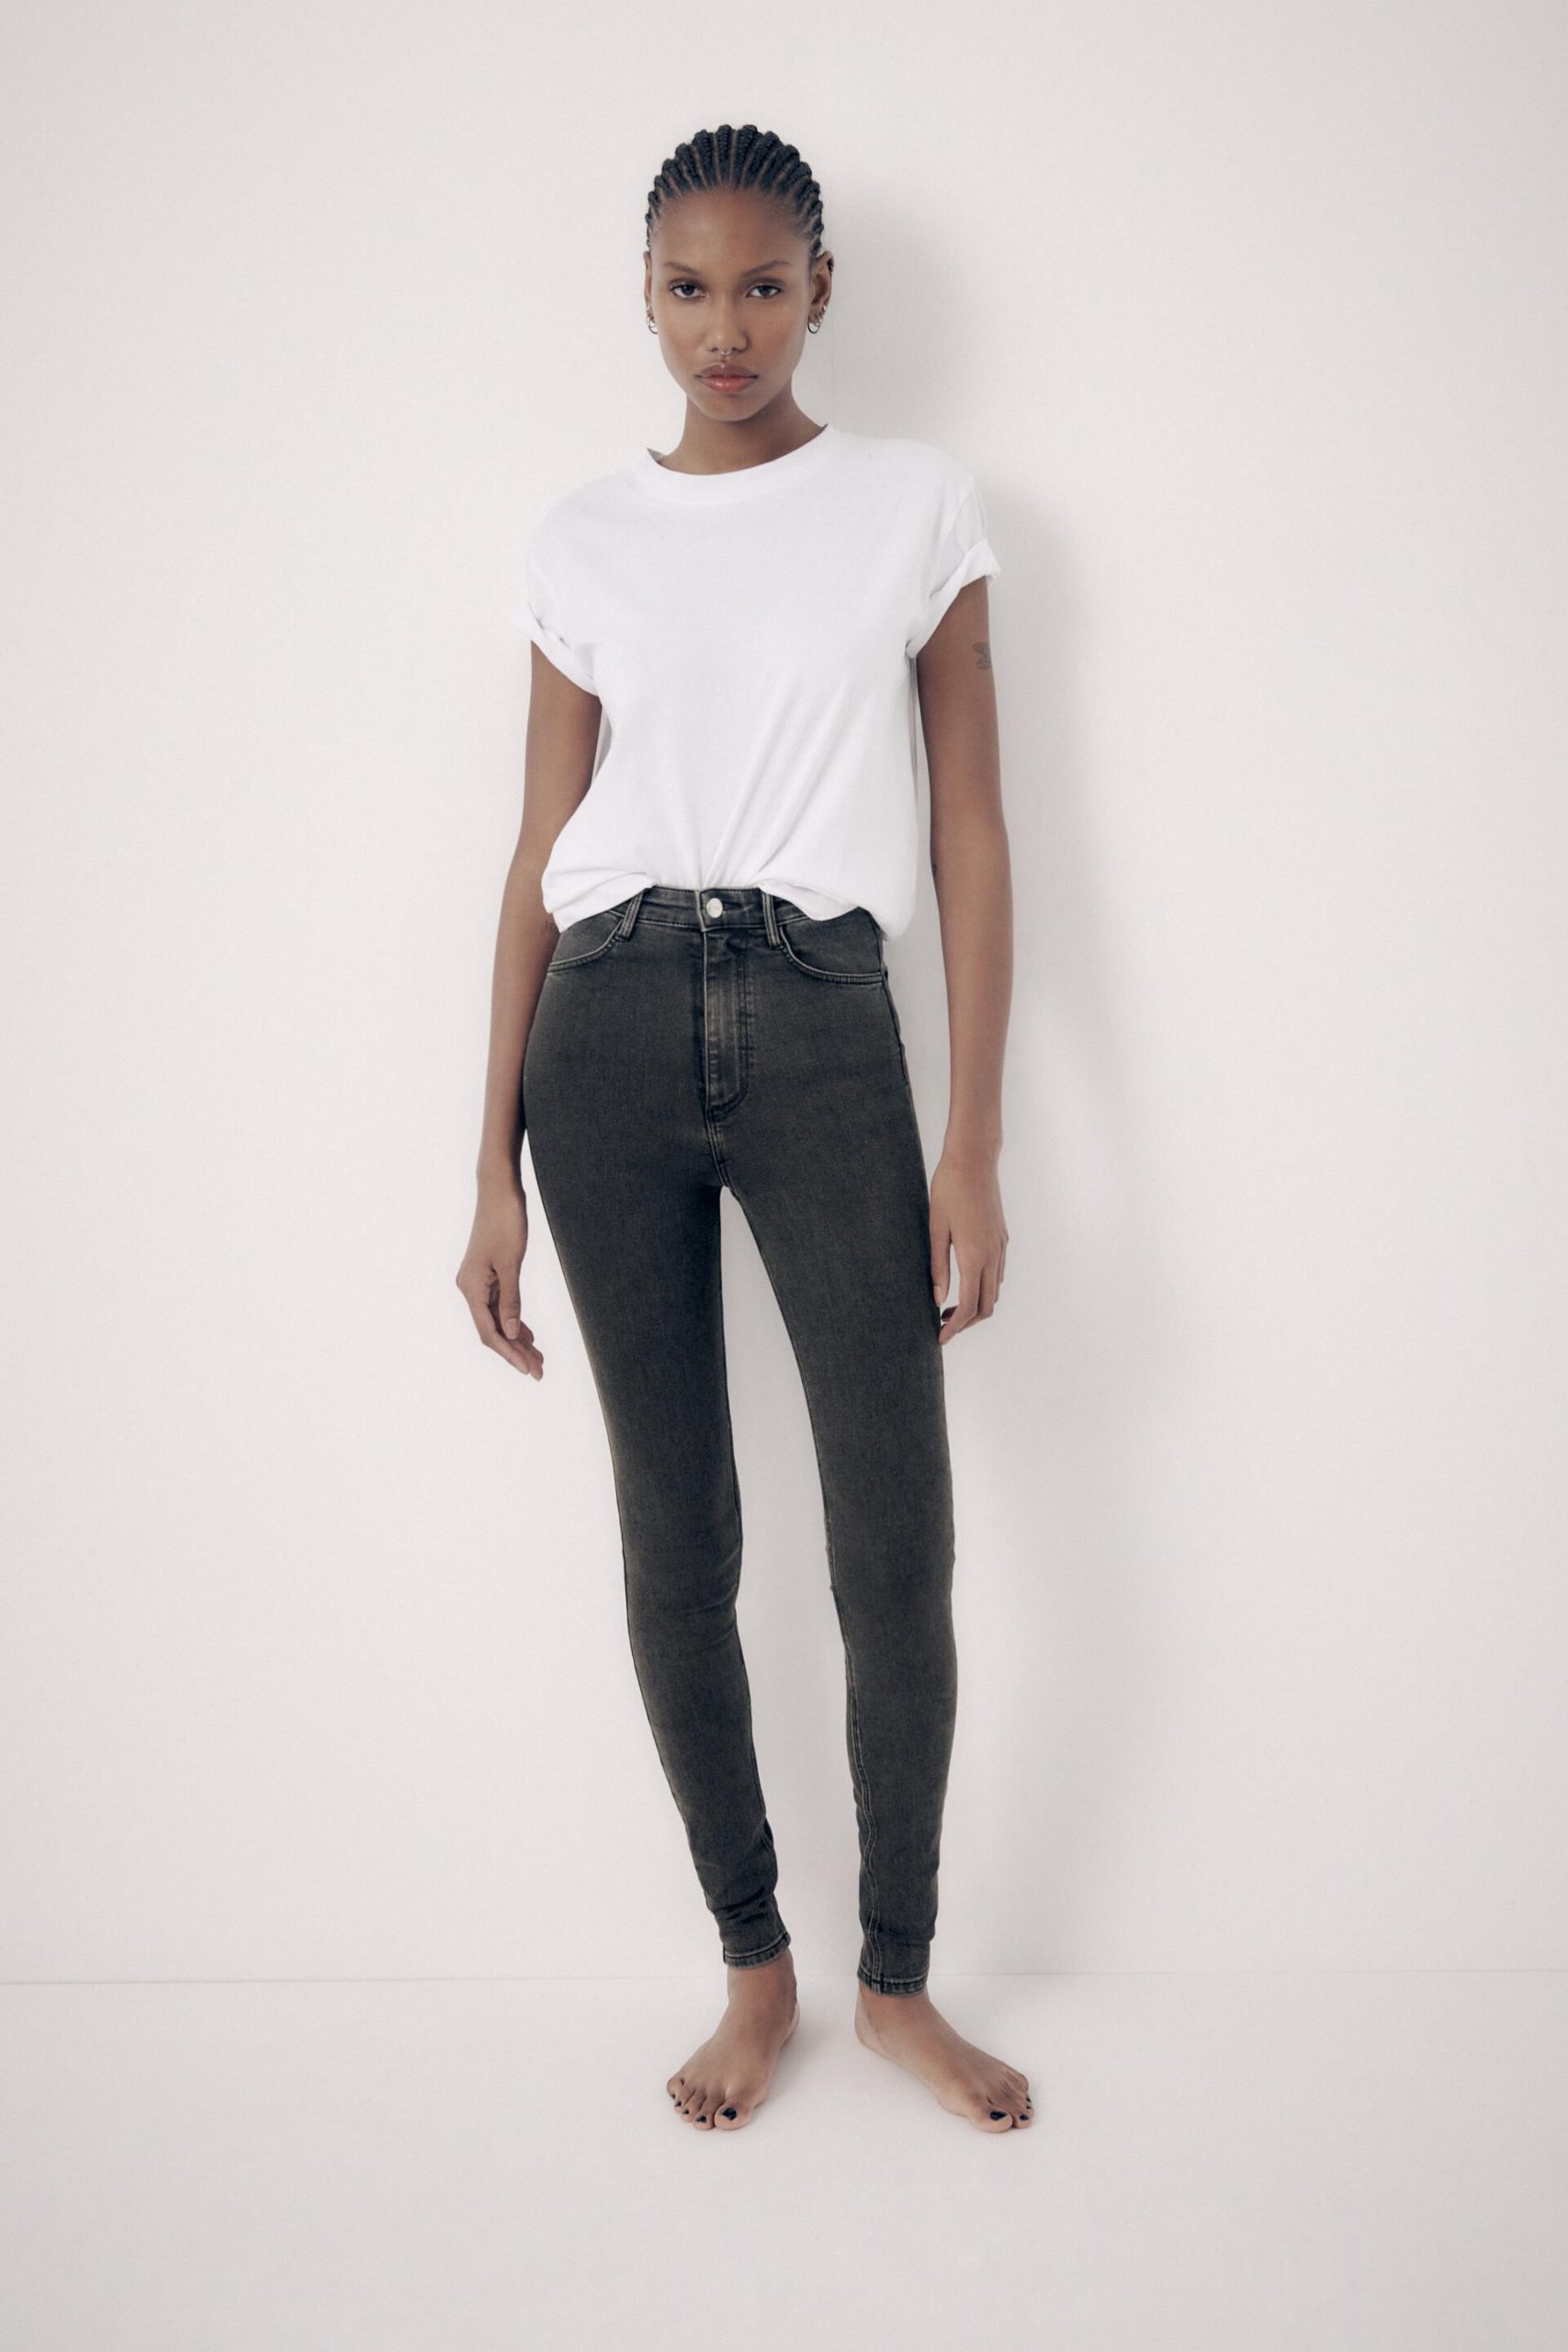 Zara enloquece a sus clientes con estos jeans que sientan de lujo